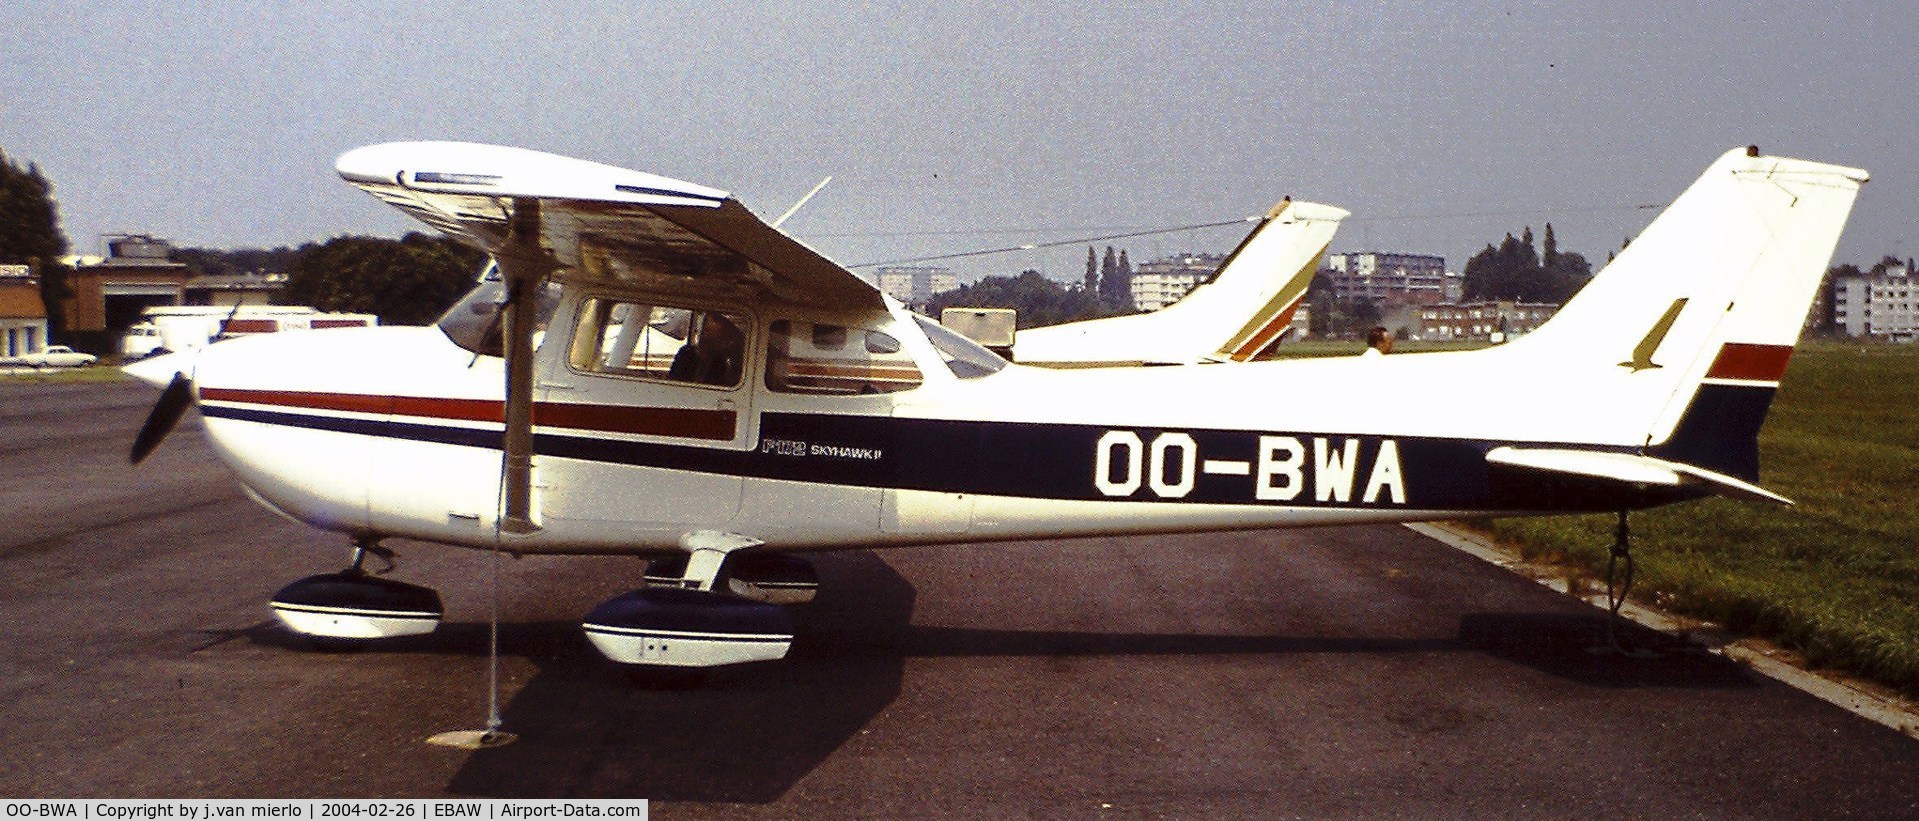 OO-BWA, 1977 Reims F172N Skyhawk C/N 1584, Antwerp, Deurne, Belgium